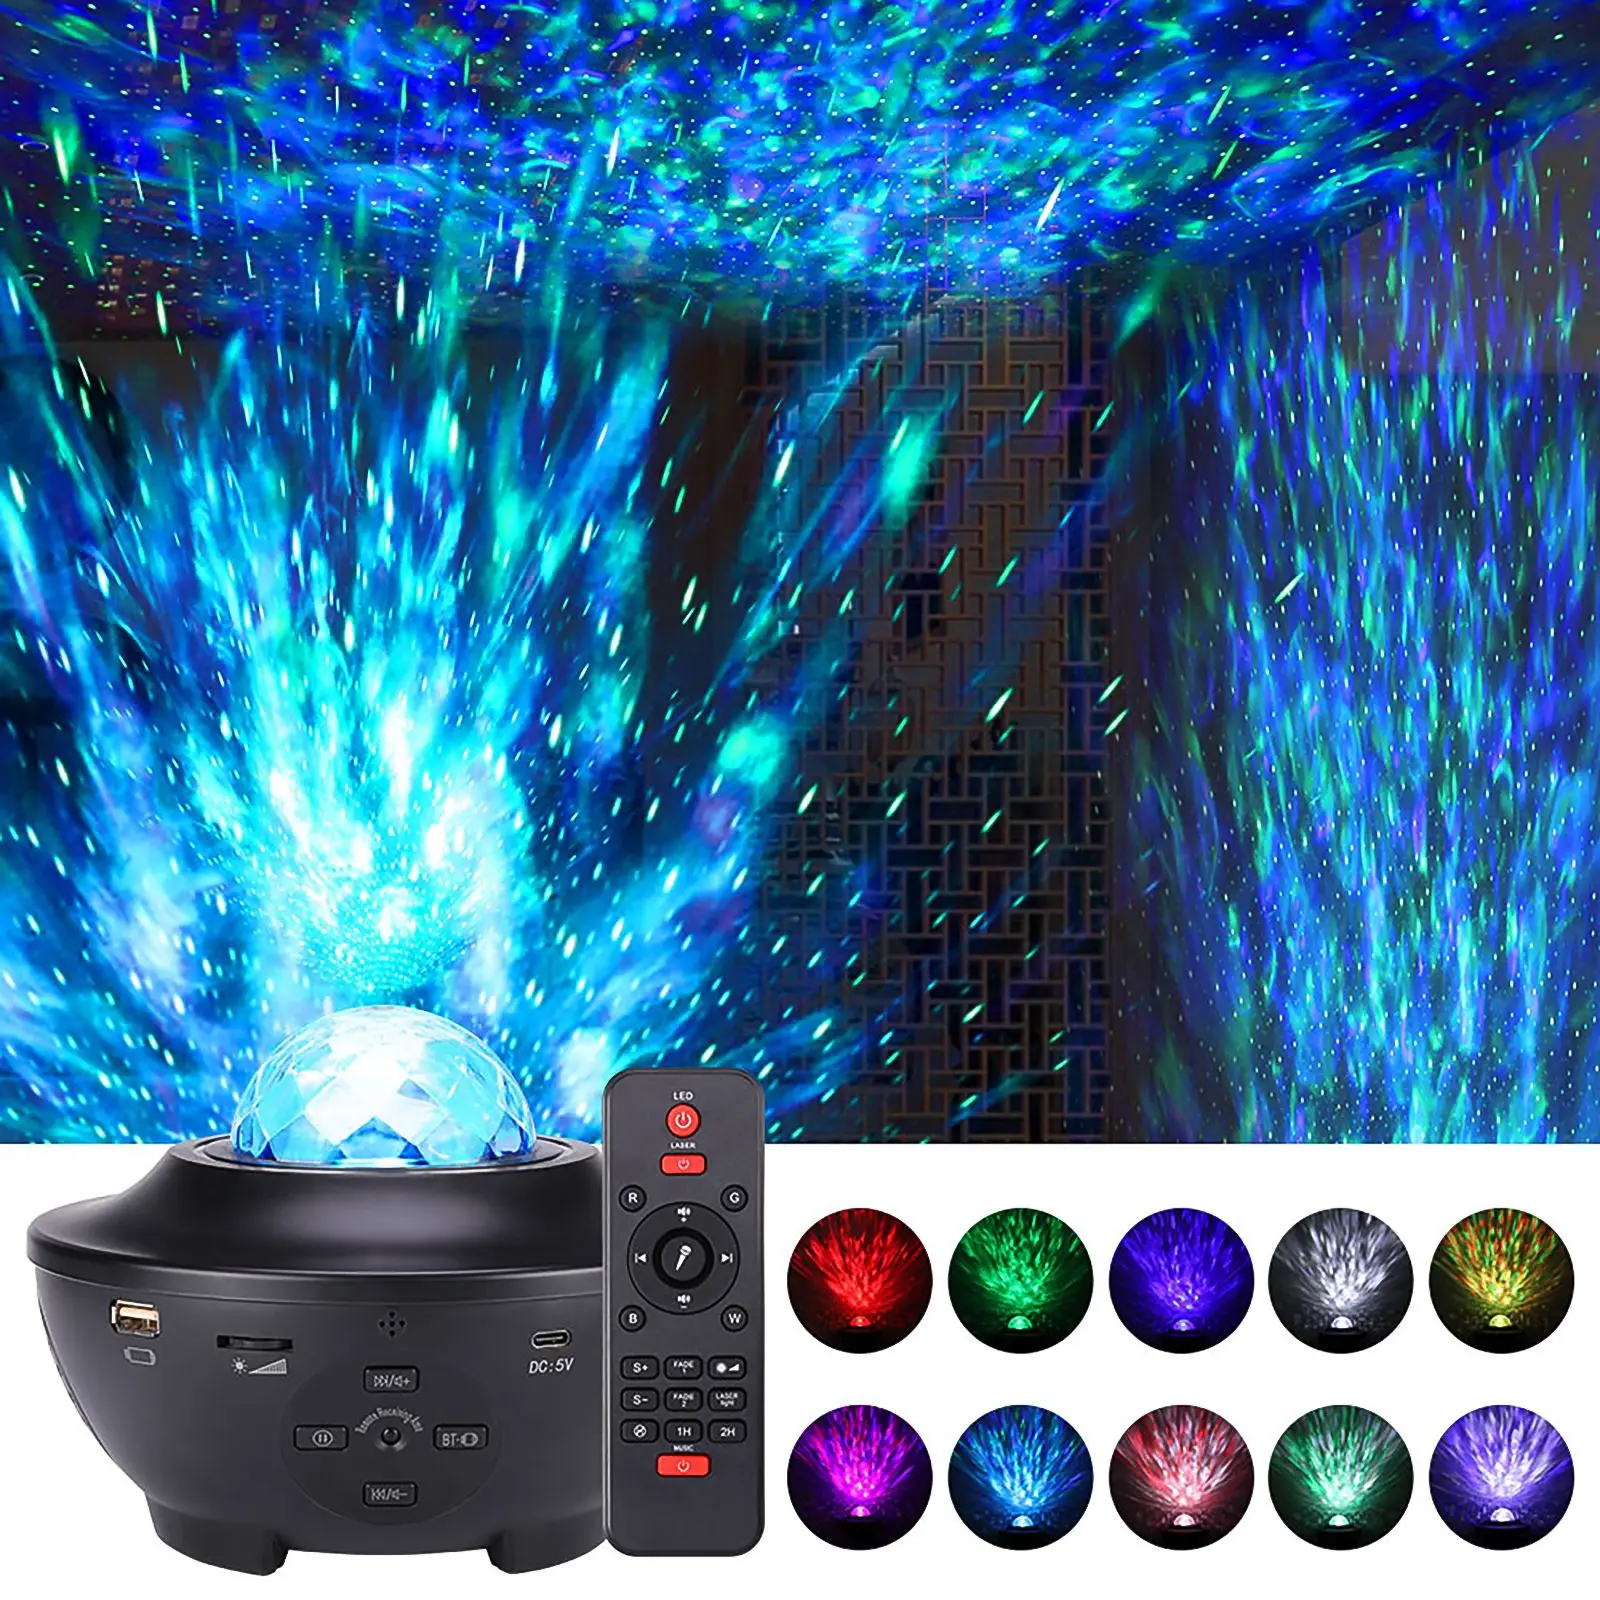 

Цветной проектор звездного неба Blueteeth, музыкальный проигрыватель с голосовым управлением через USB, светодиодный ночсветильник, USB-зарядка, п...